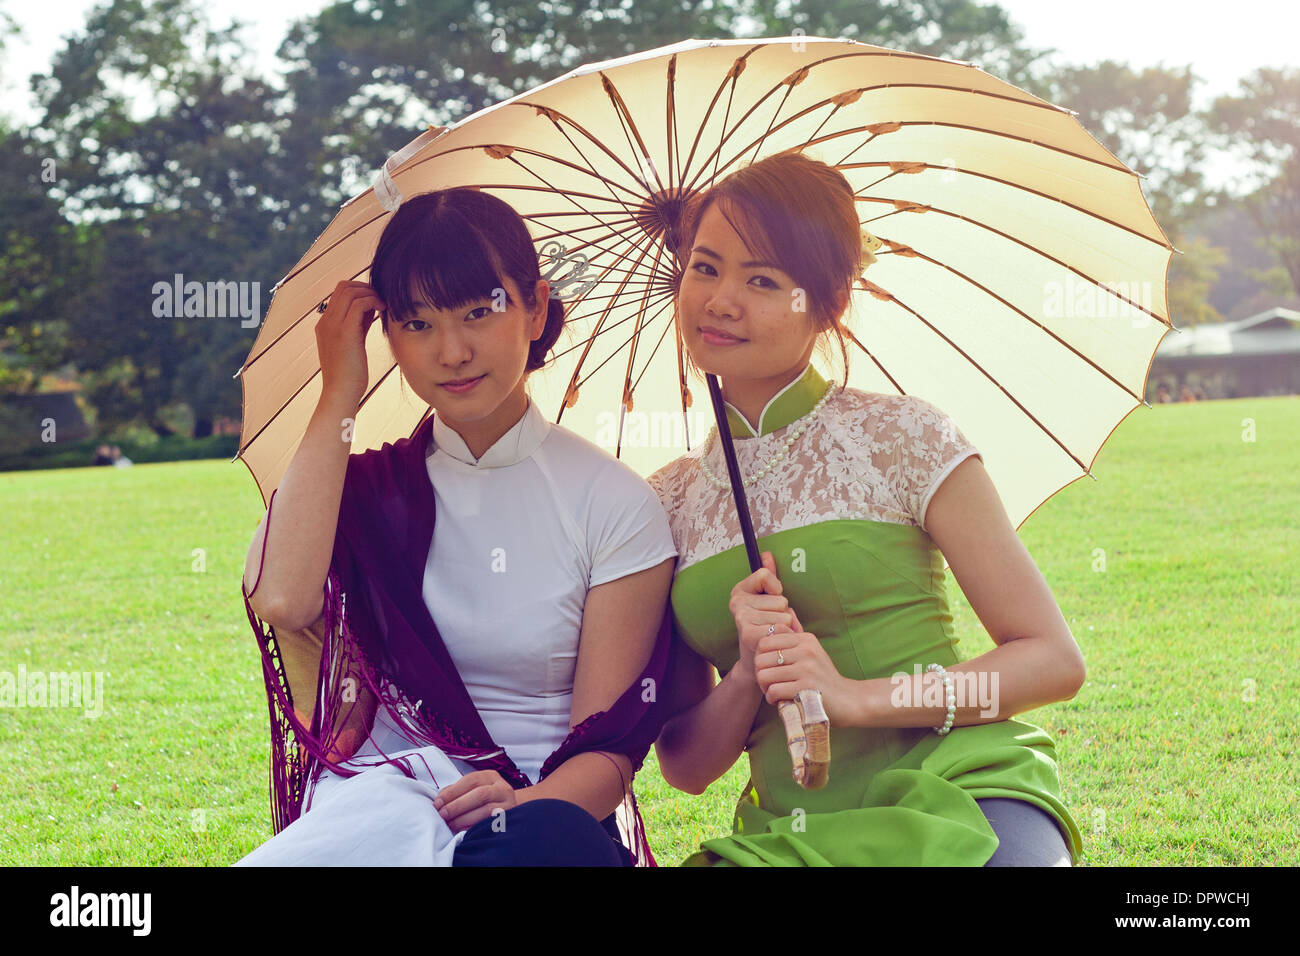 Junge Frauen halten Sonnenschirme in vietnamesischen Tracht lächelnd in die Kamera kniend Stockfoto